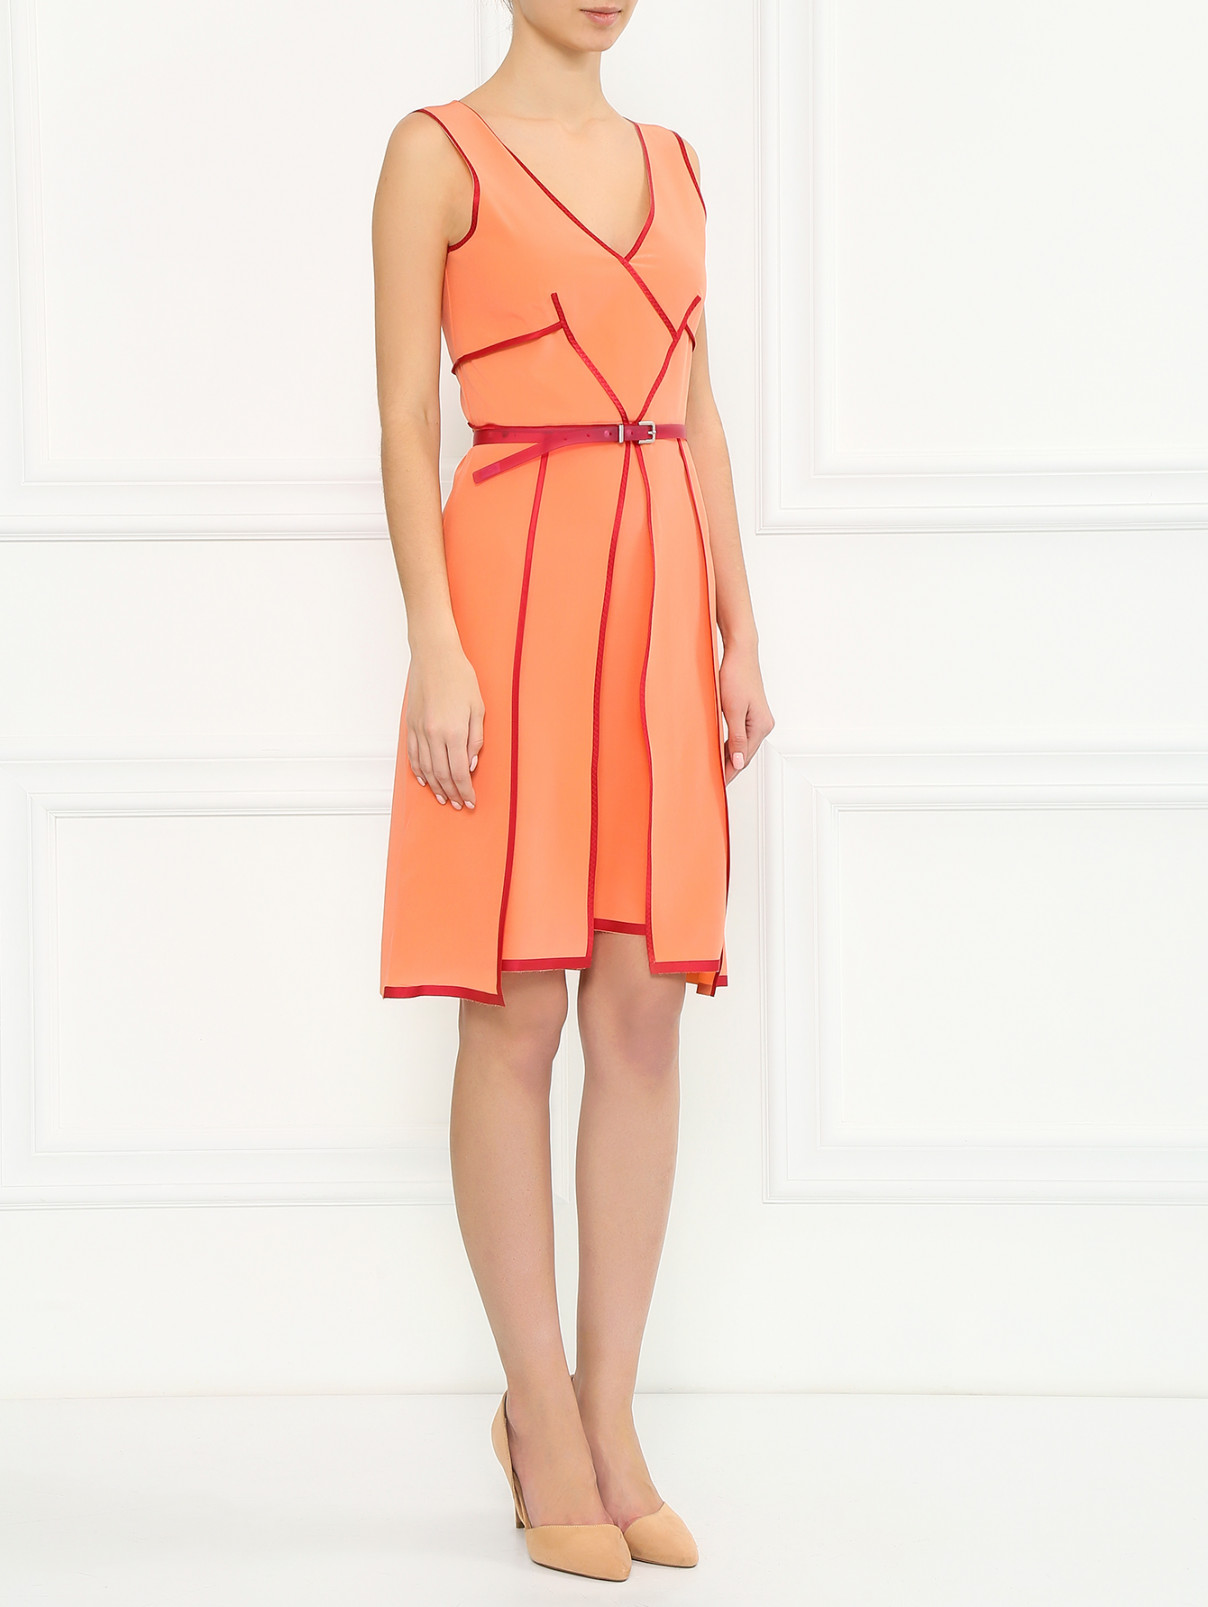 Шелковое платье с контрастной окантовкой Sportmax  –  Модель Общий вид  – Цвет:  Красный